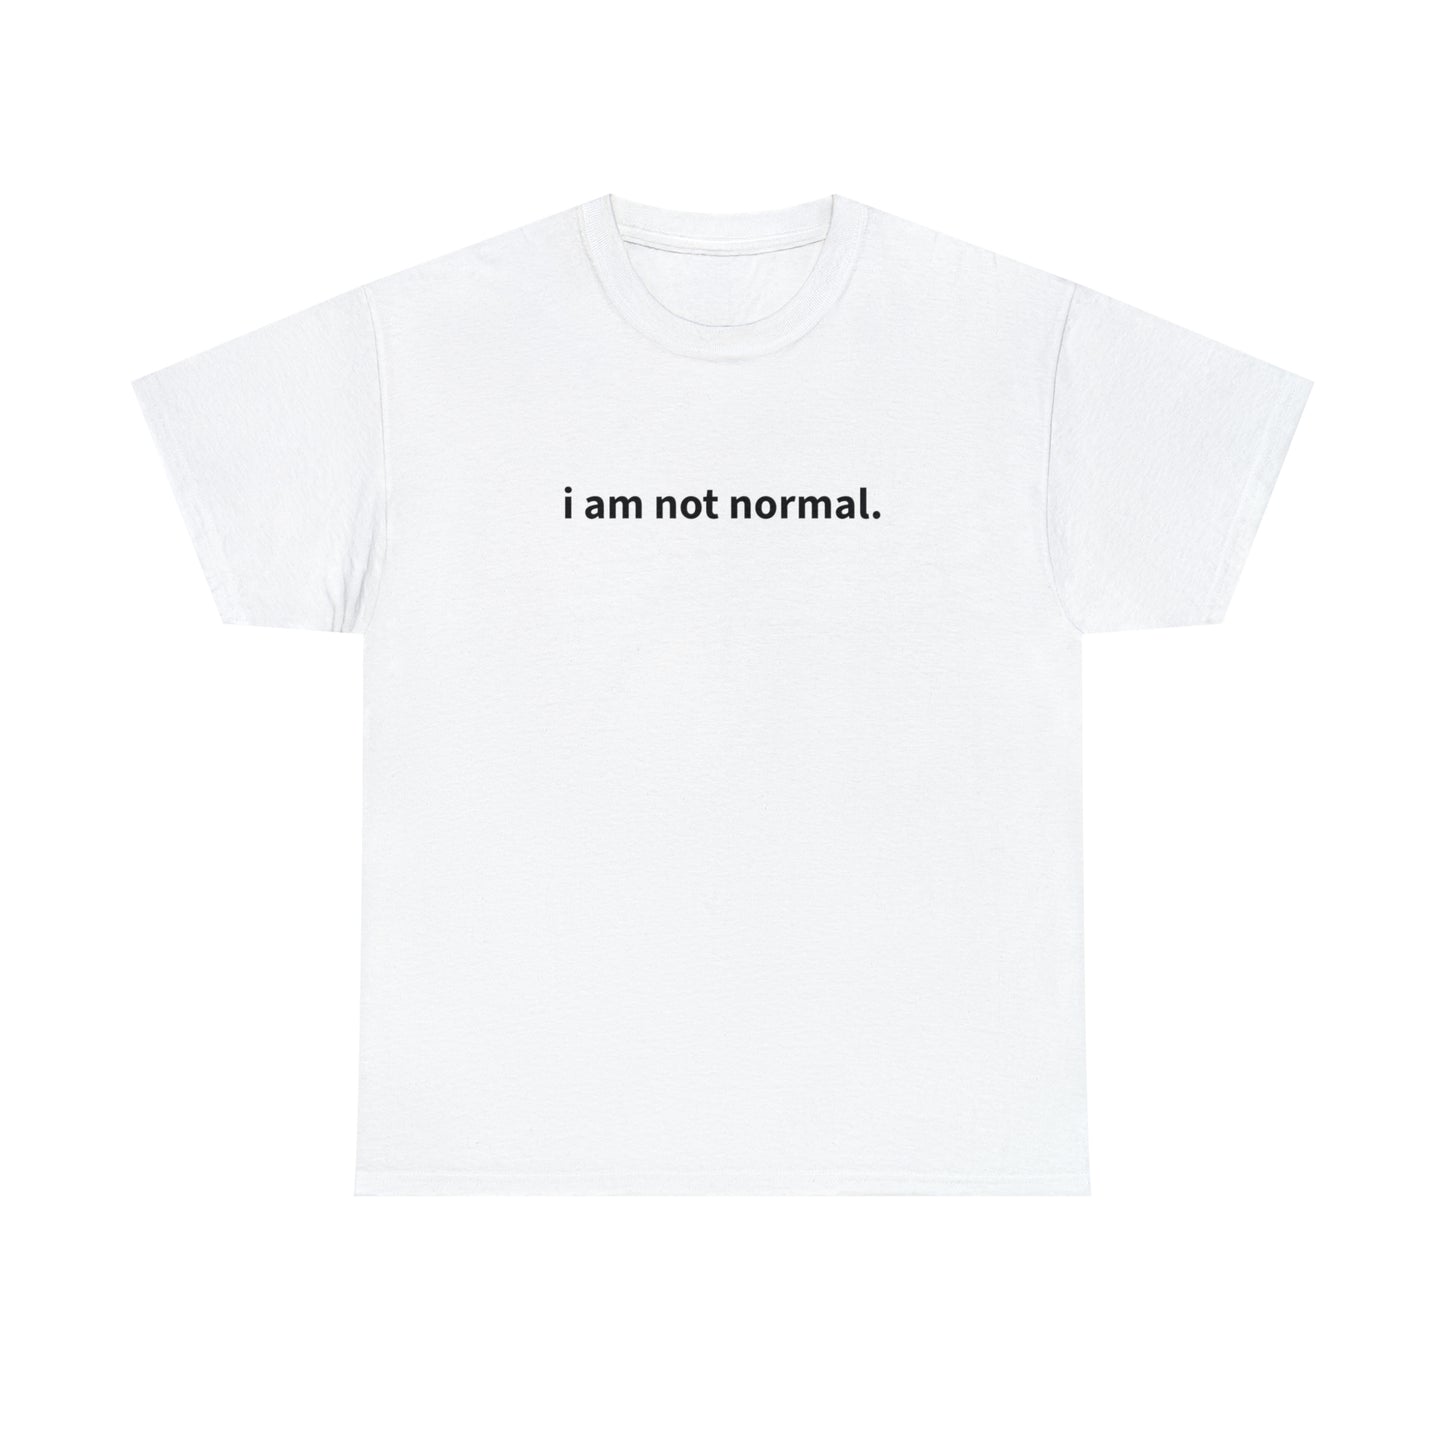 "i am not normal" T-Shirt!